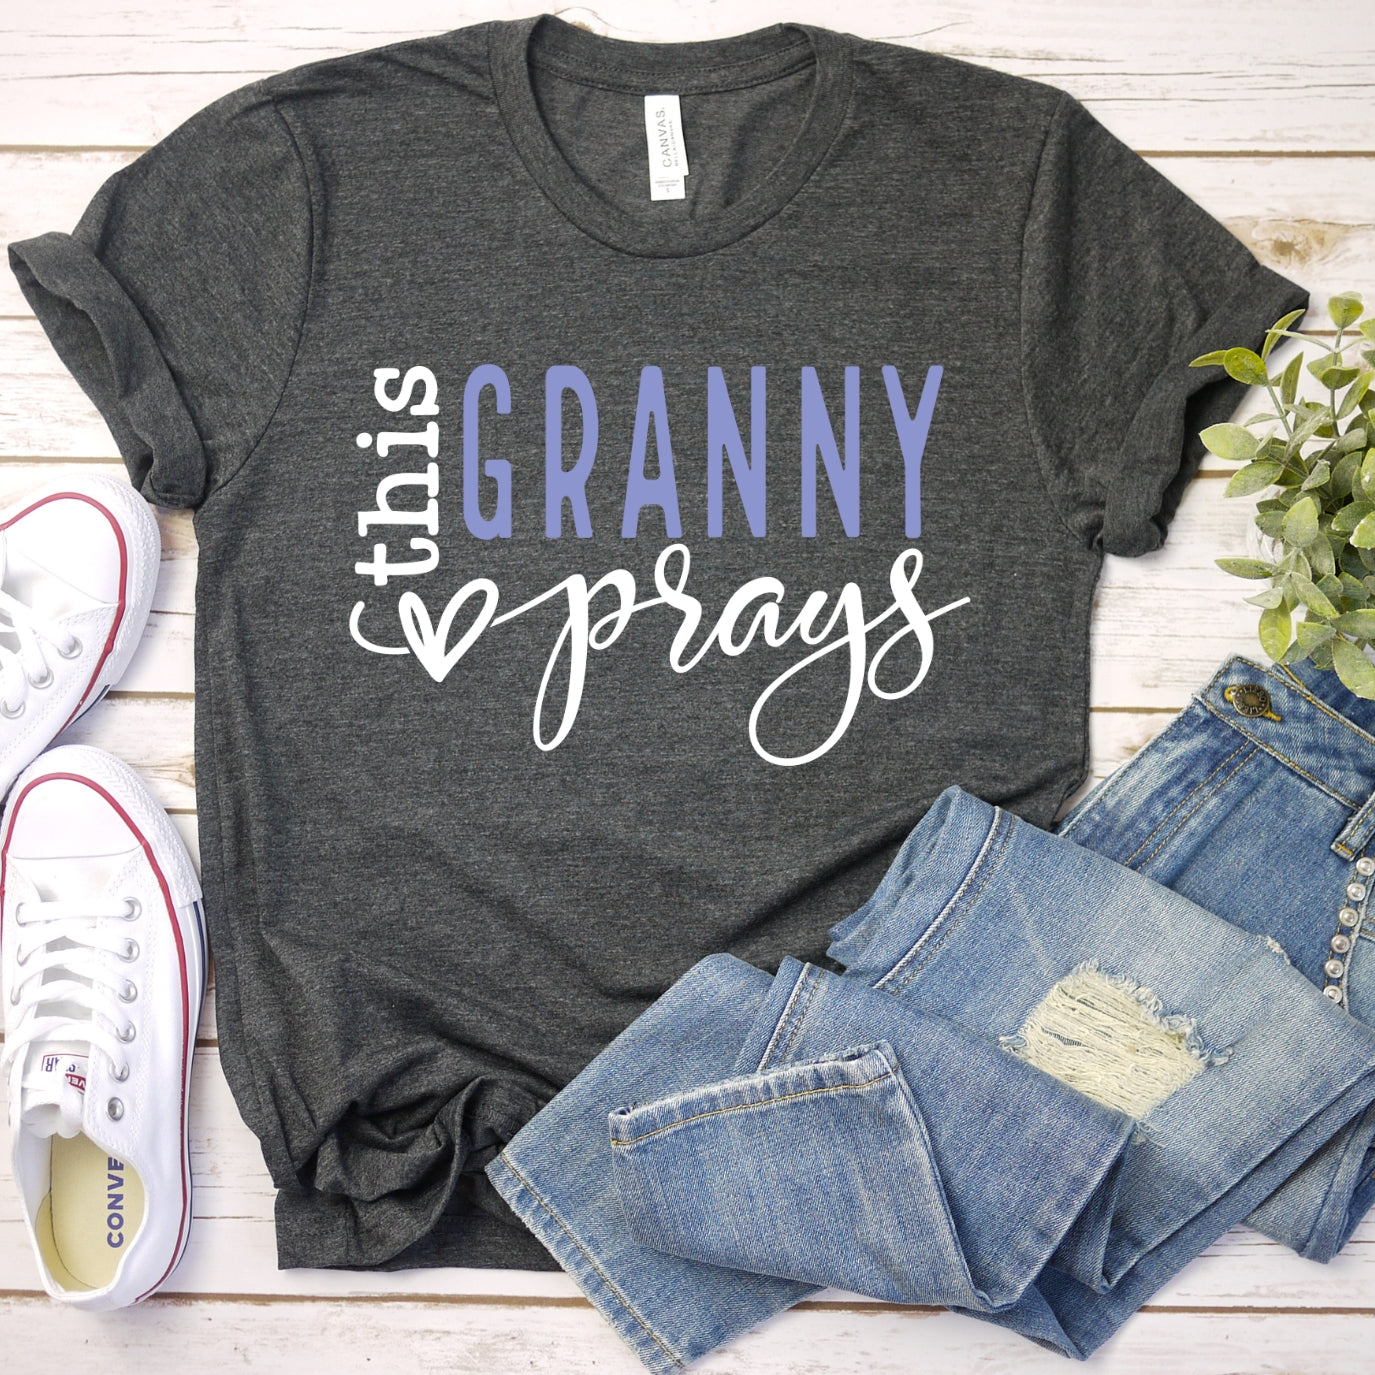 This Granny Prays Women's T-Shirt